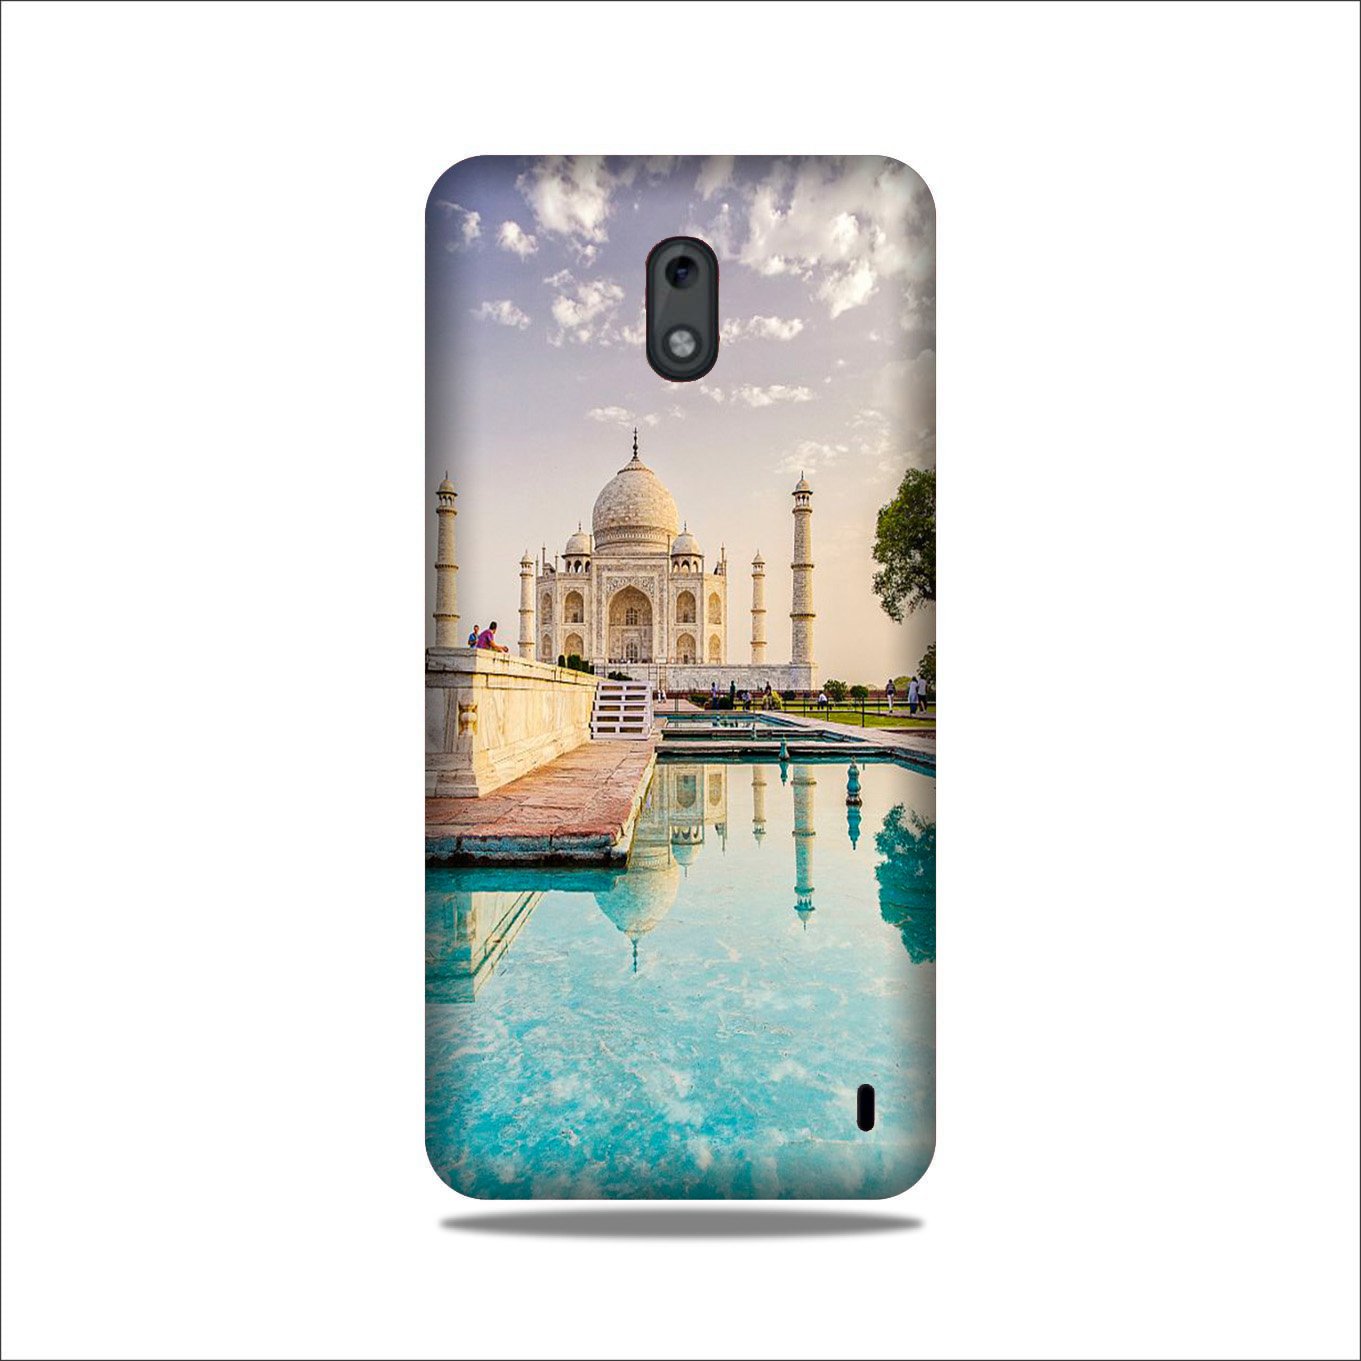 Taj Mahal Case for Nokia 2.2 (Design No. 297)